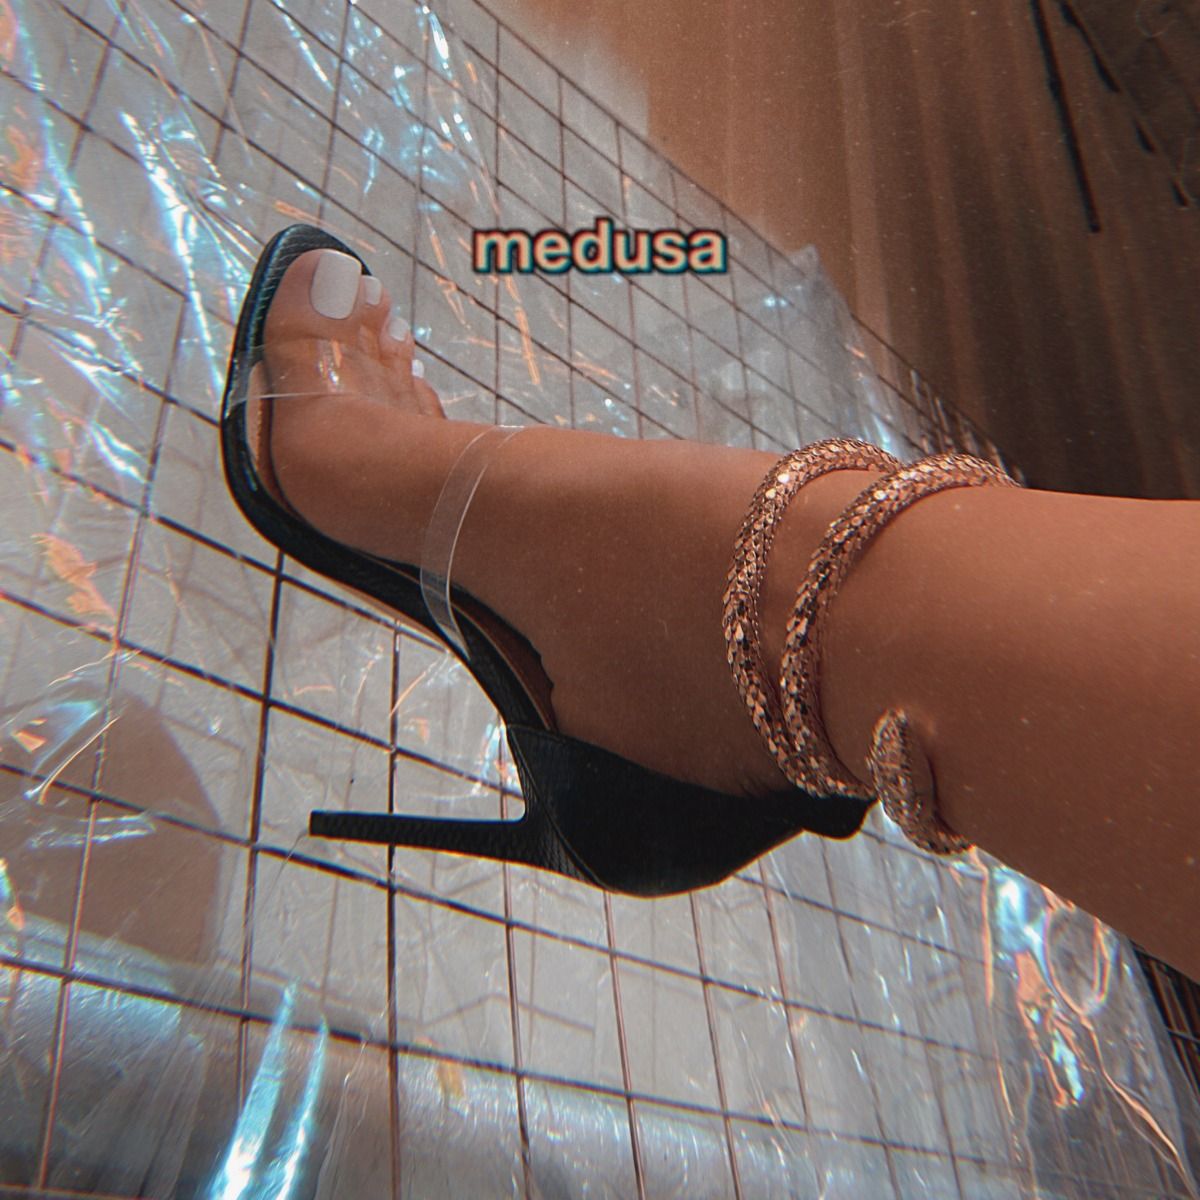 medusa heels